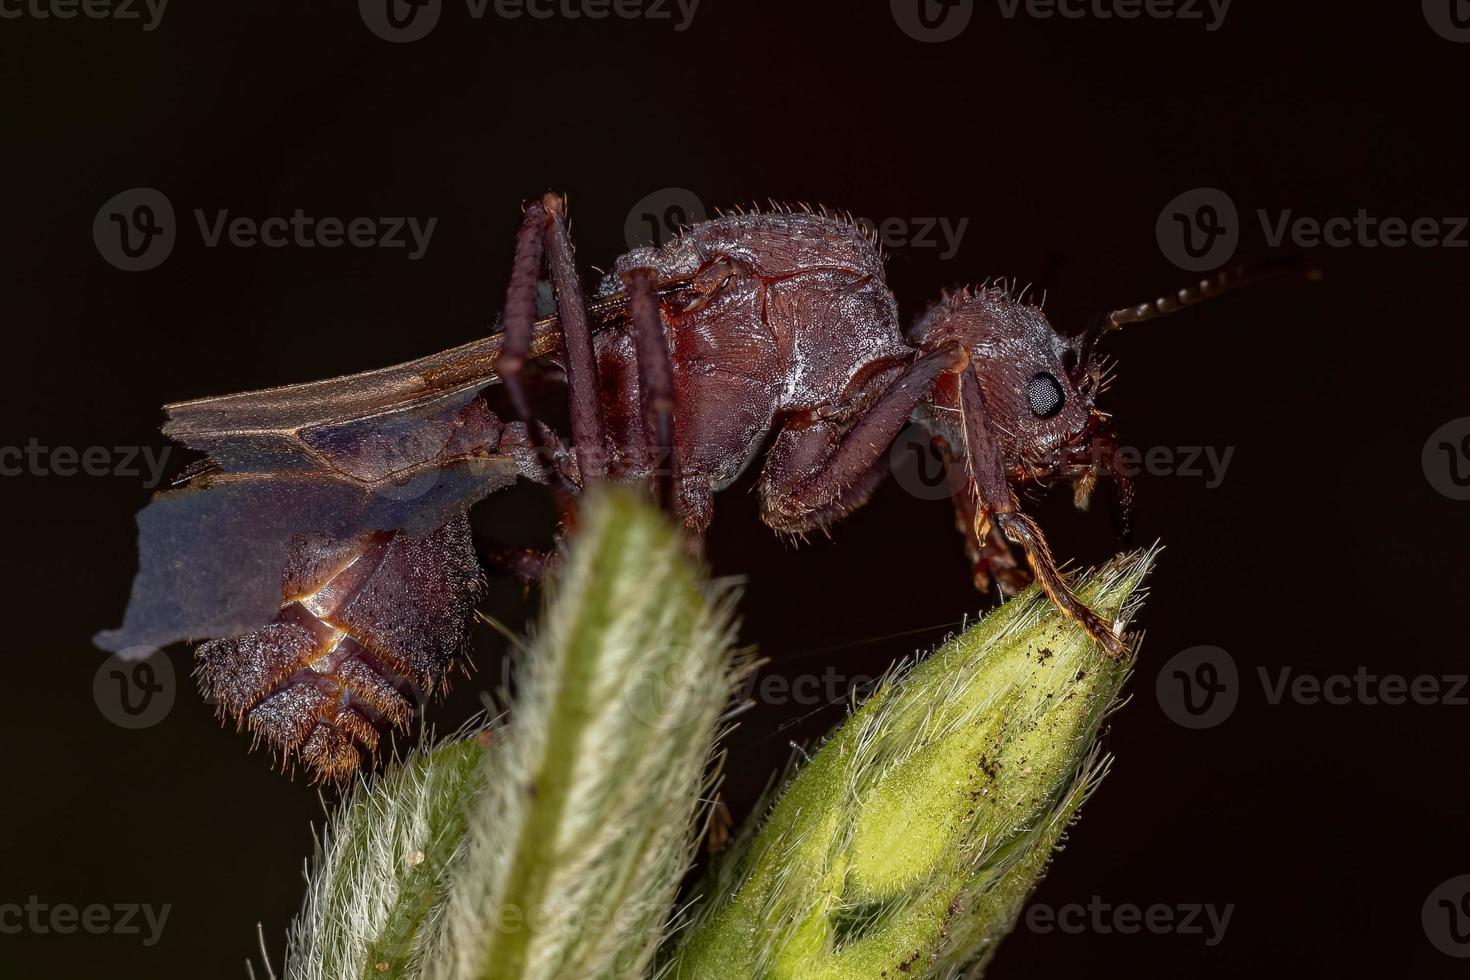 vuxen kvinnlig acromyrmex lövskärardrottning myra foto